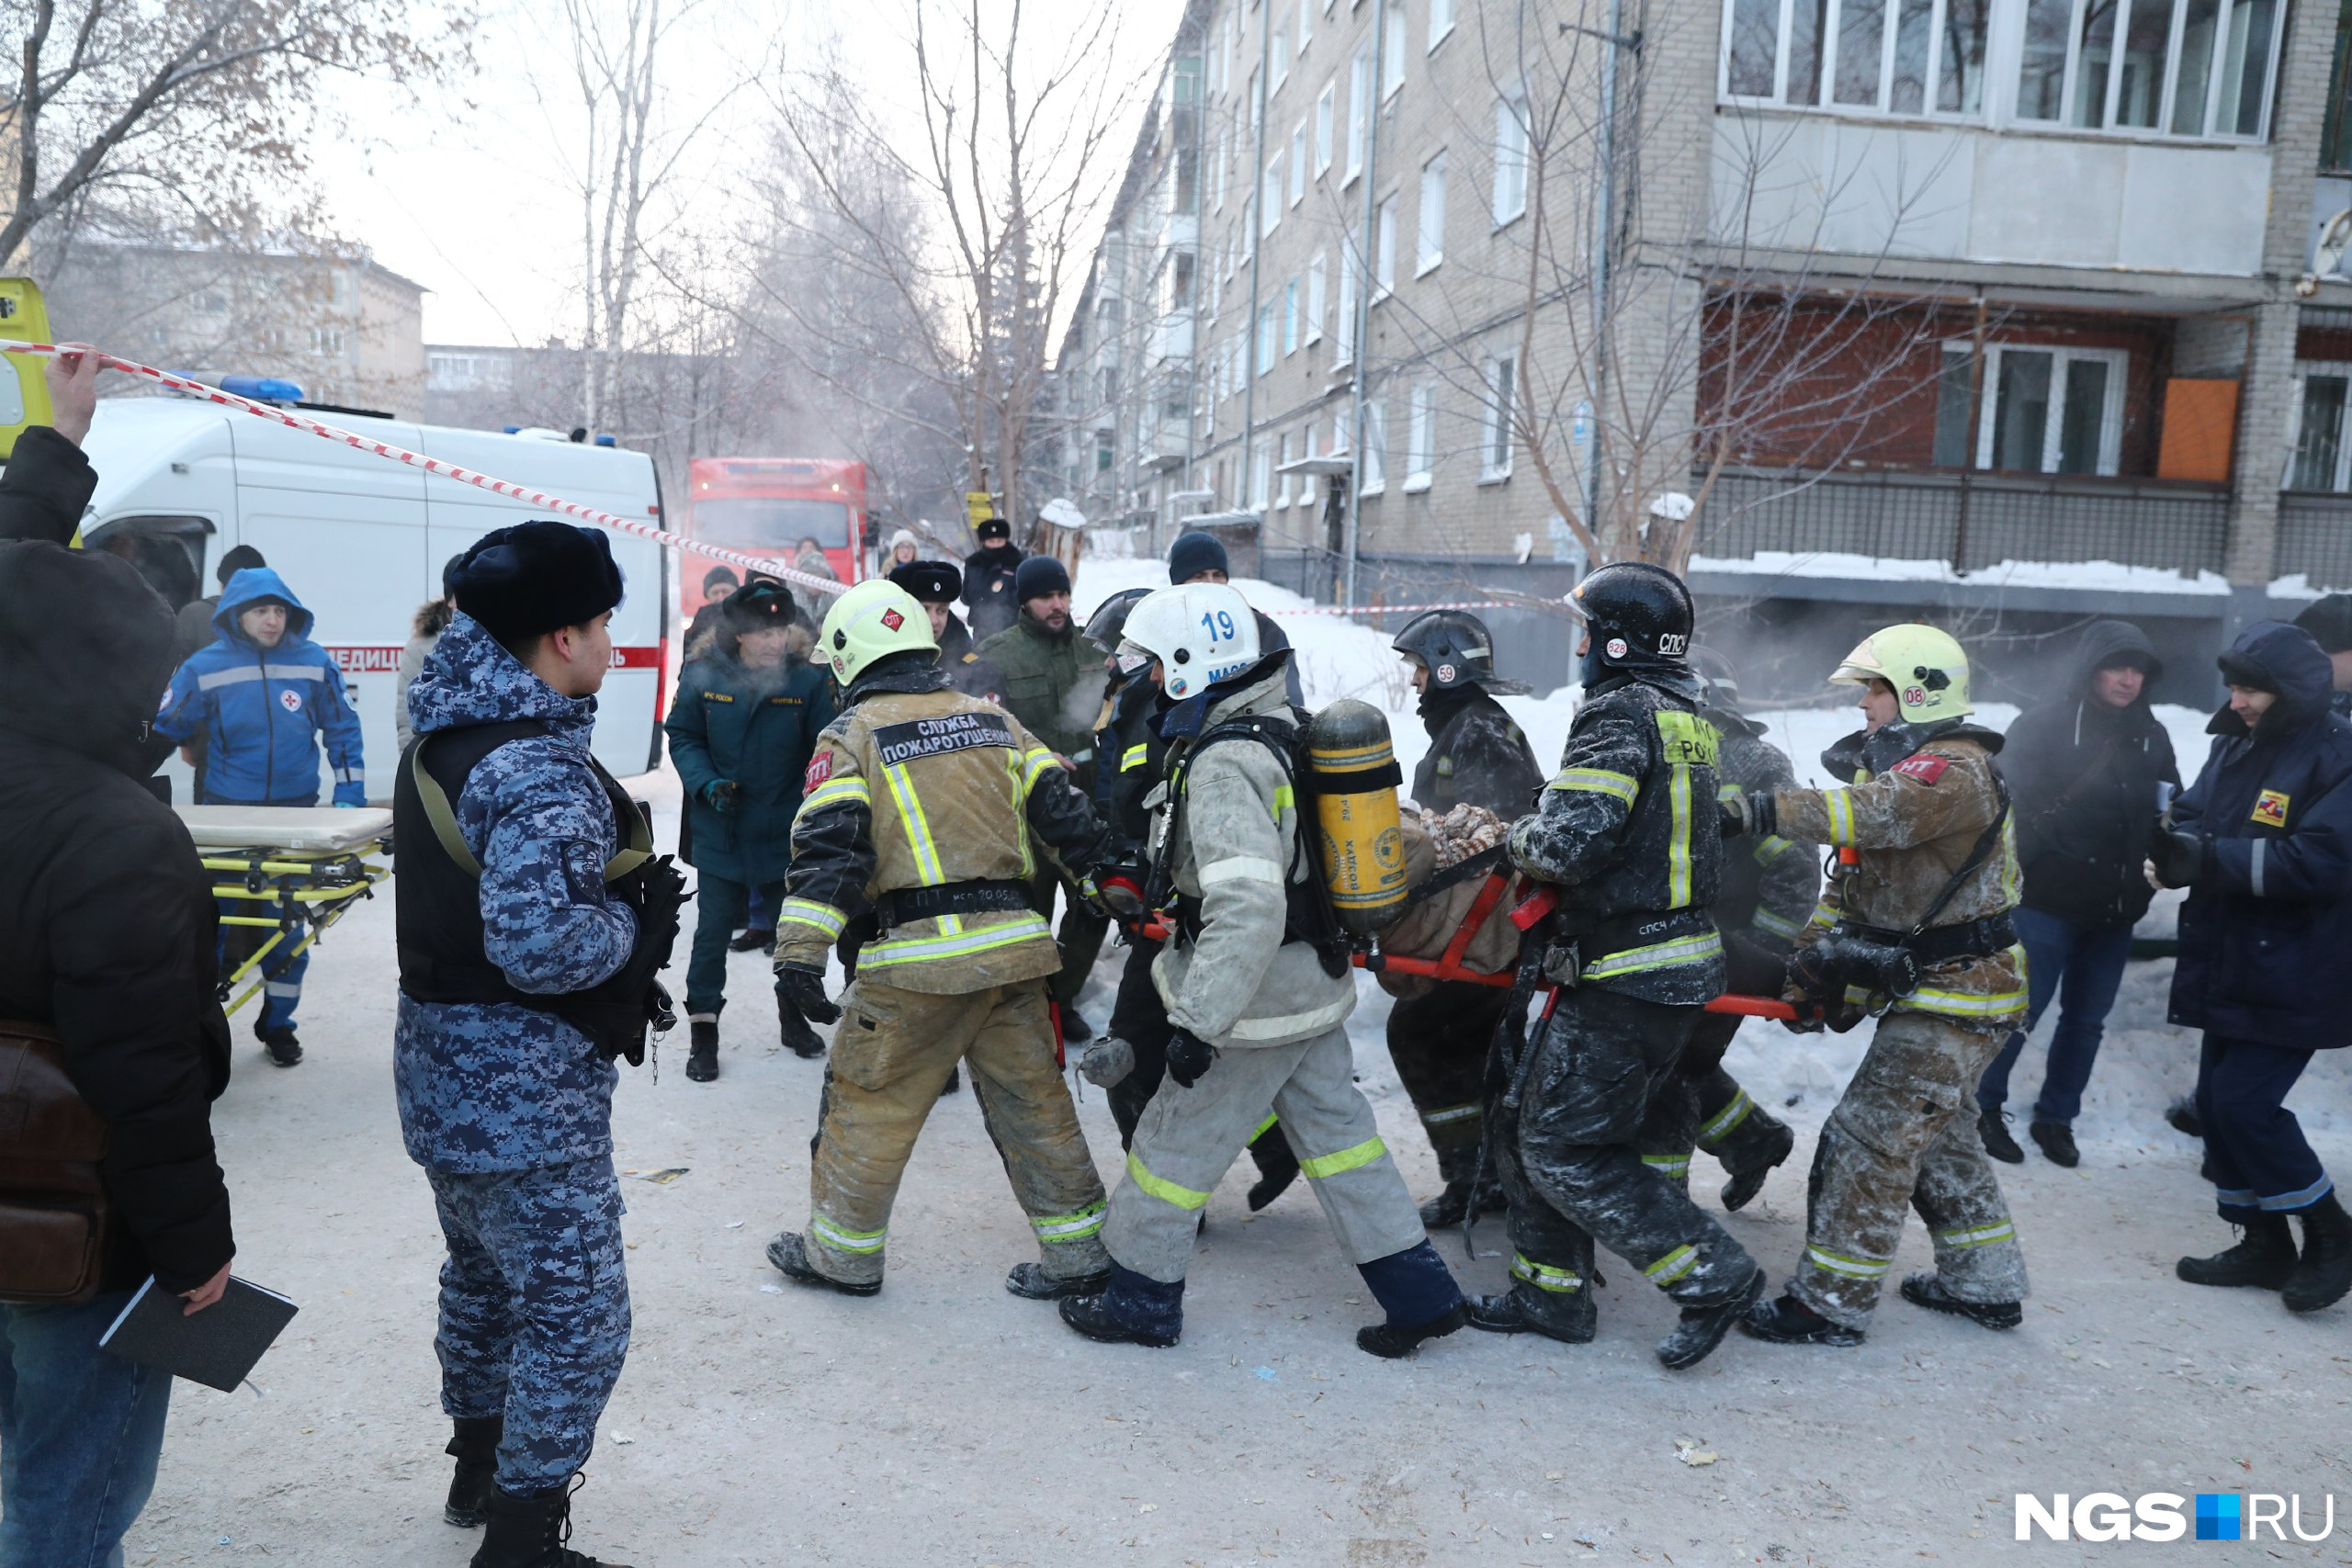 Новосибирск после теракта. Спасатели. МЧС России спасение людей. Взрыв газа в Новосибирске. Пожарные и спасатели.